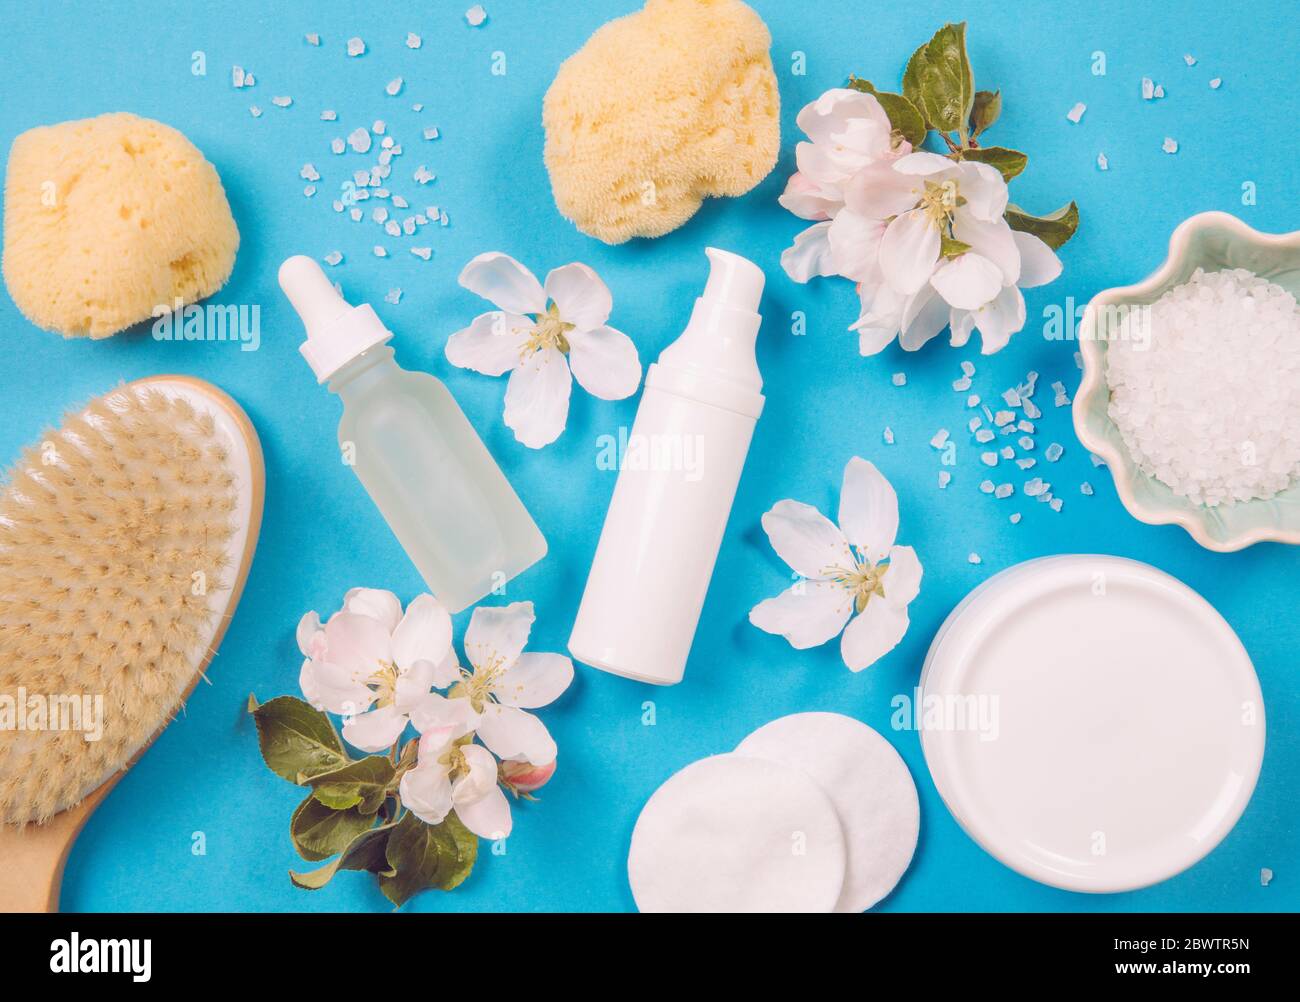 Flache Ansicht von verschiedenen weißen Container Beauty-Produkte mit frischen Frühling Apfelbaumblüten. Frühling Schönheit Rituale Konzept. Lebendige Farben. Stockfoto